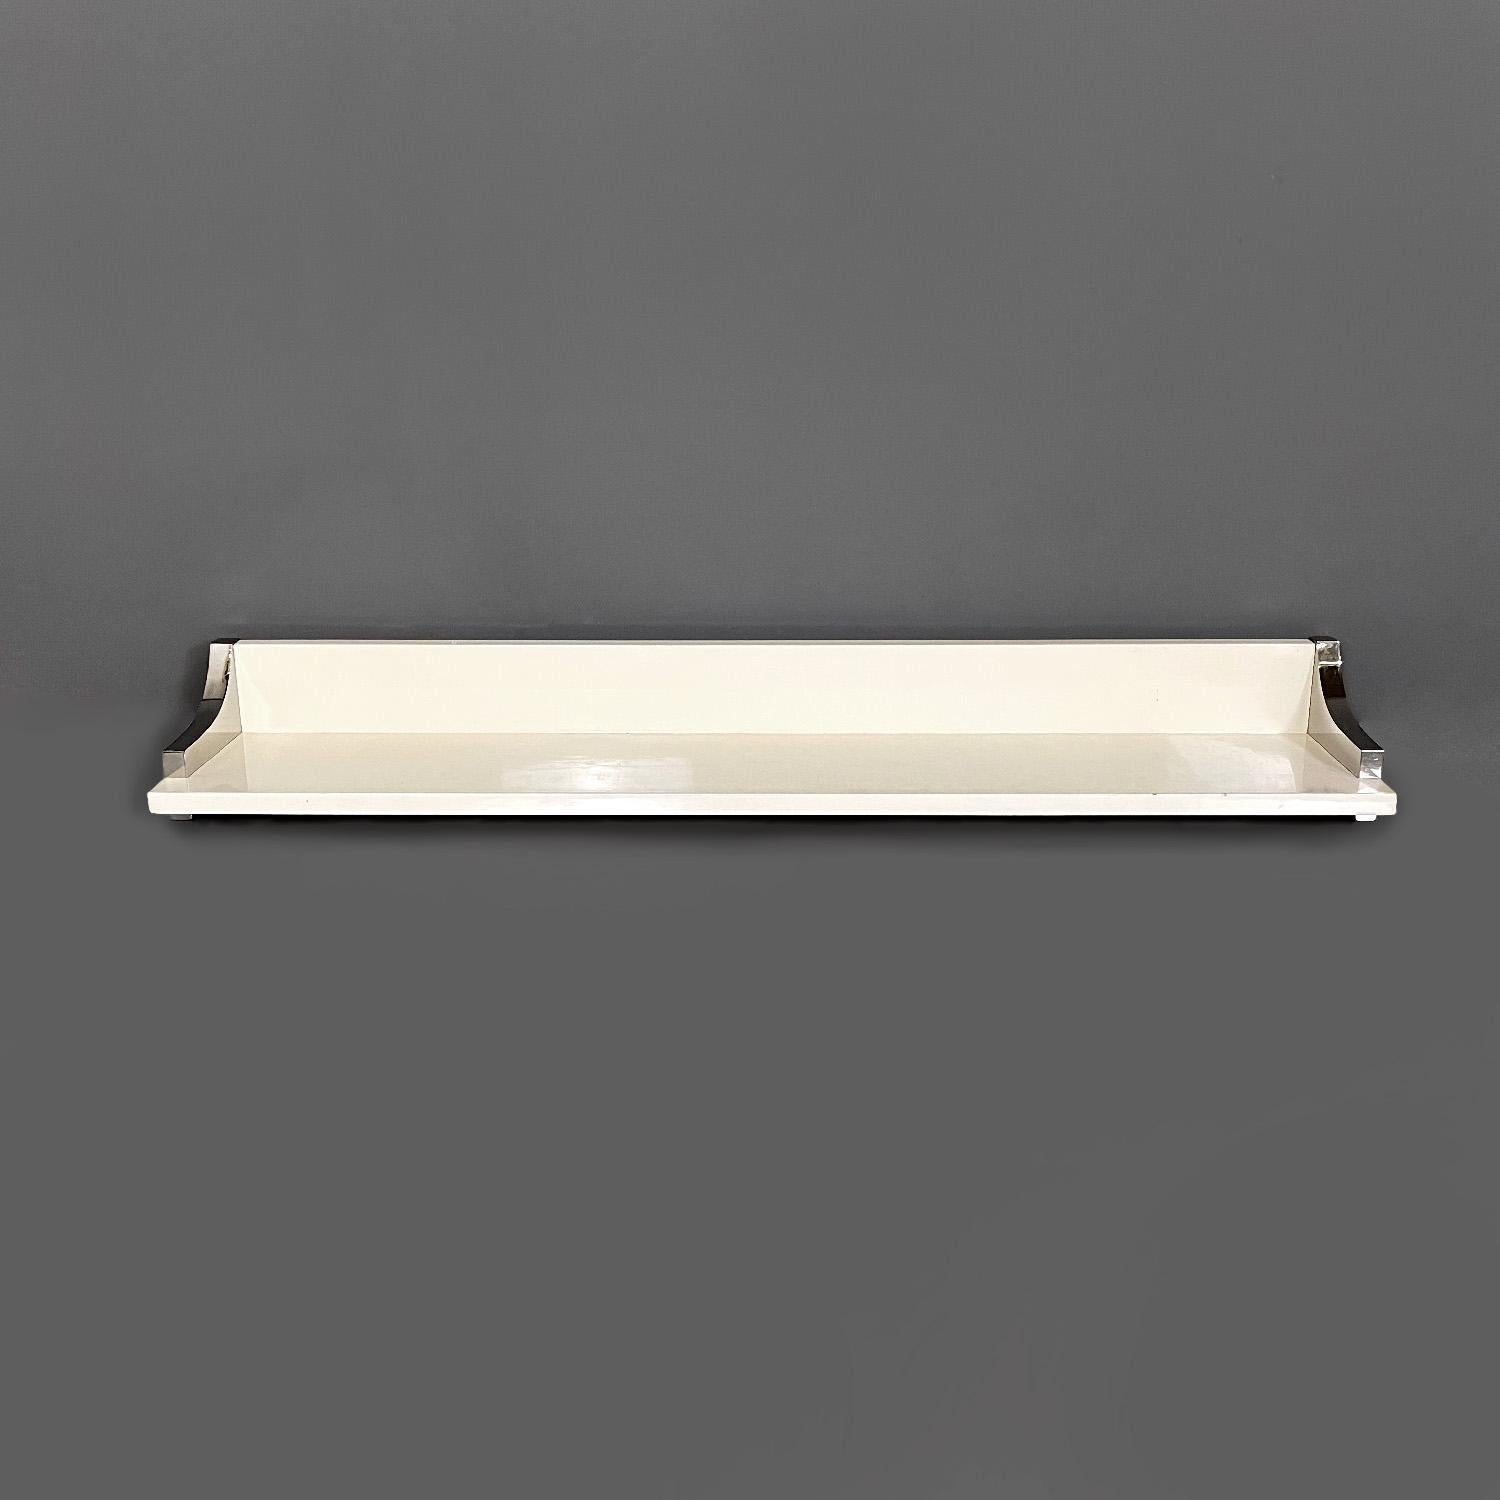 Étagère moderne italienne en bois laqué blanc et métal chromé de D.I.D., années 1980
Etagère rectangulaire, la structure est en bois laqué blanc avec une finition brillante. Les deux côtés sont recouverts d'un revêtement décoratif en métal chromé